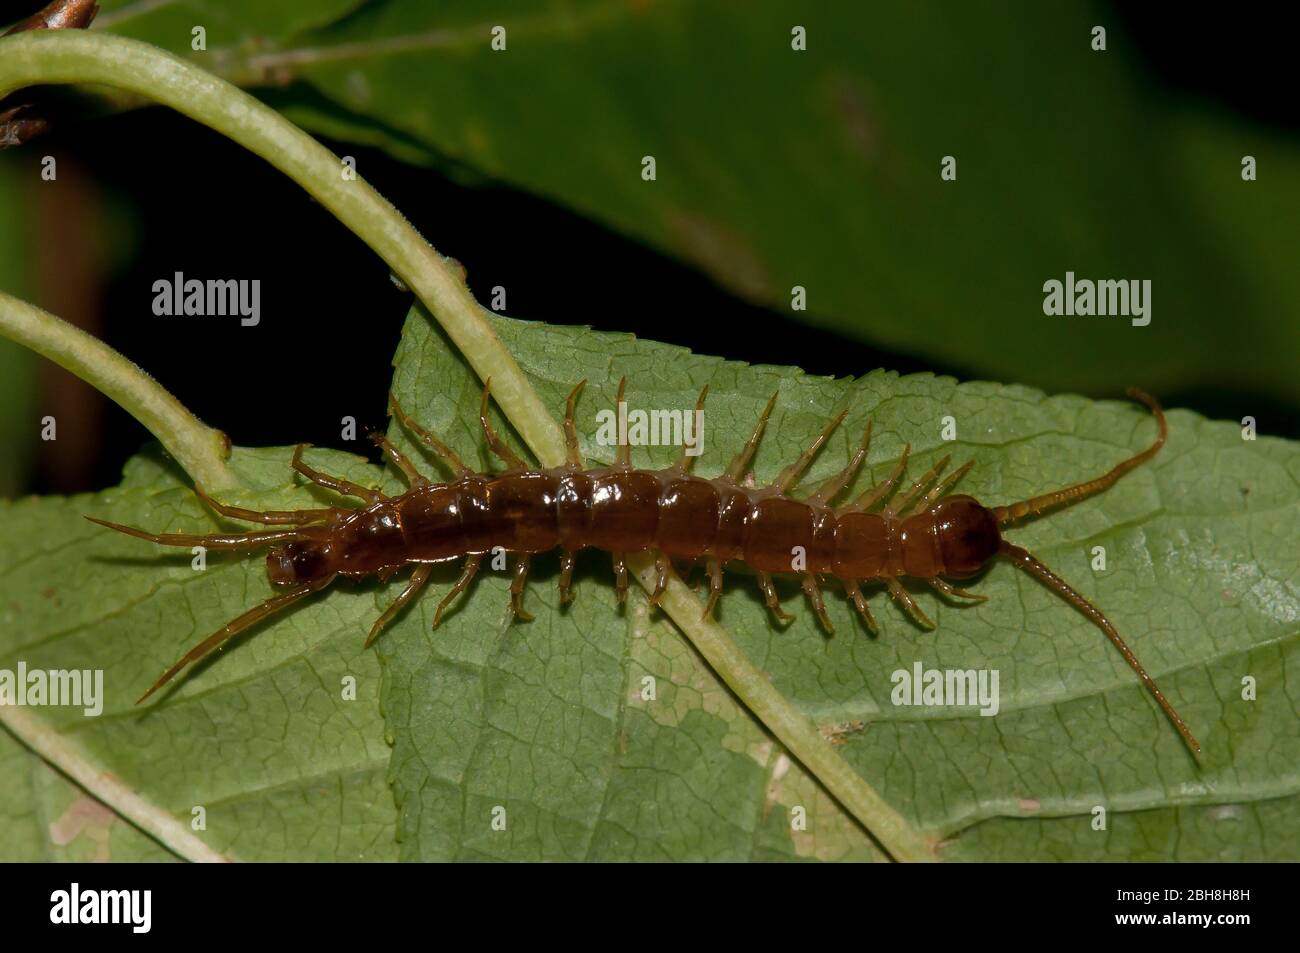 Common centipede, Lithobius forficatus, crawling on leaf underside, Bavaria, Germany Stock Photo